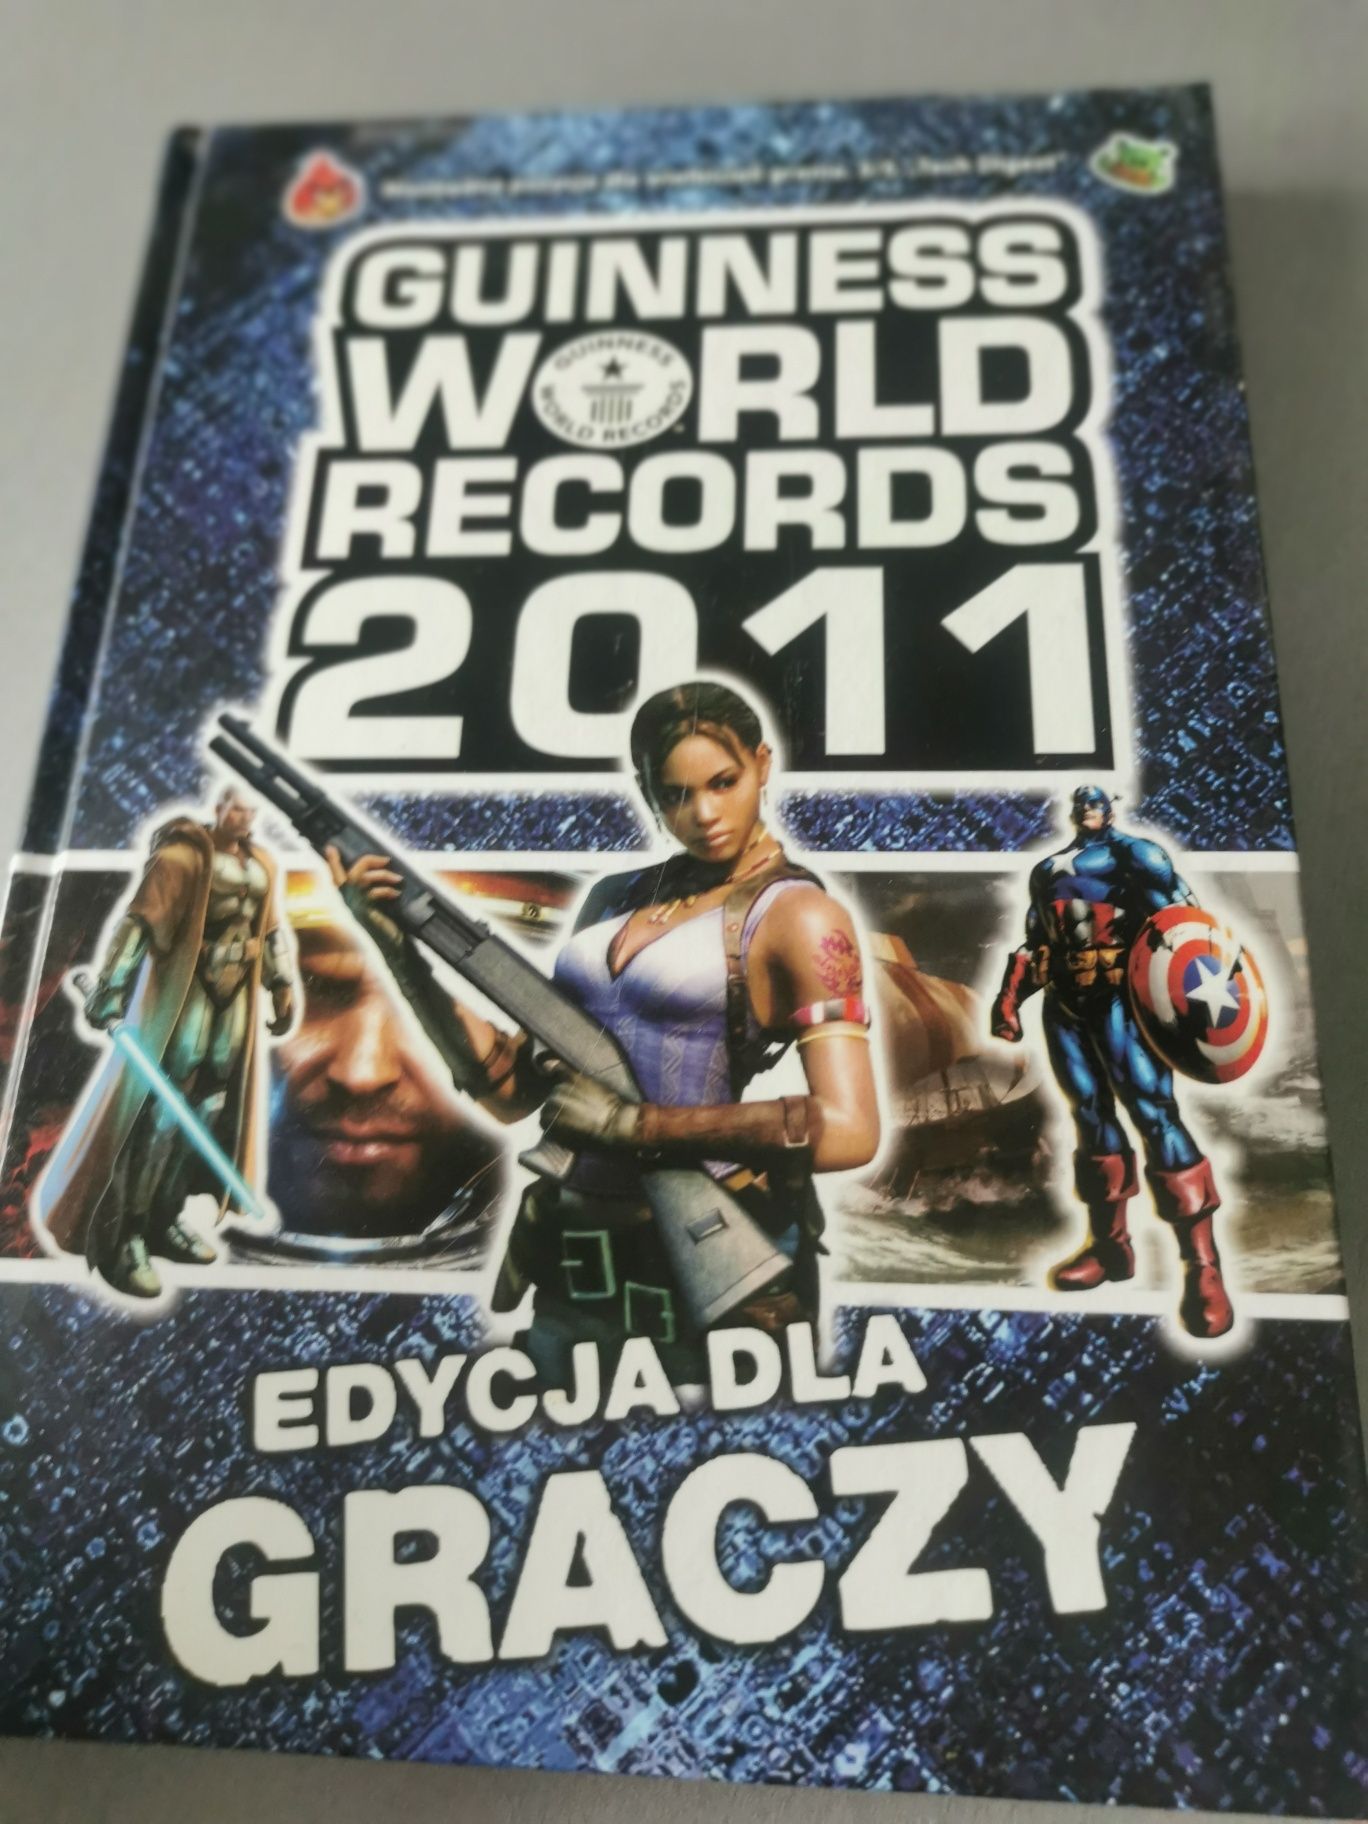 Guinness World Records 2011 Edycja dla graczy